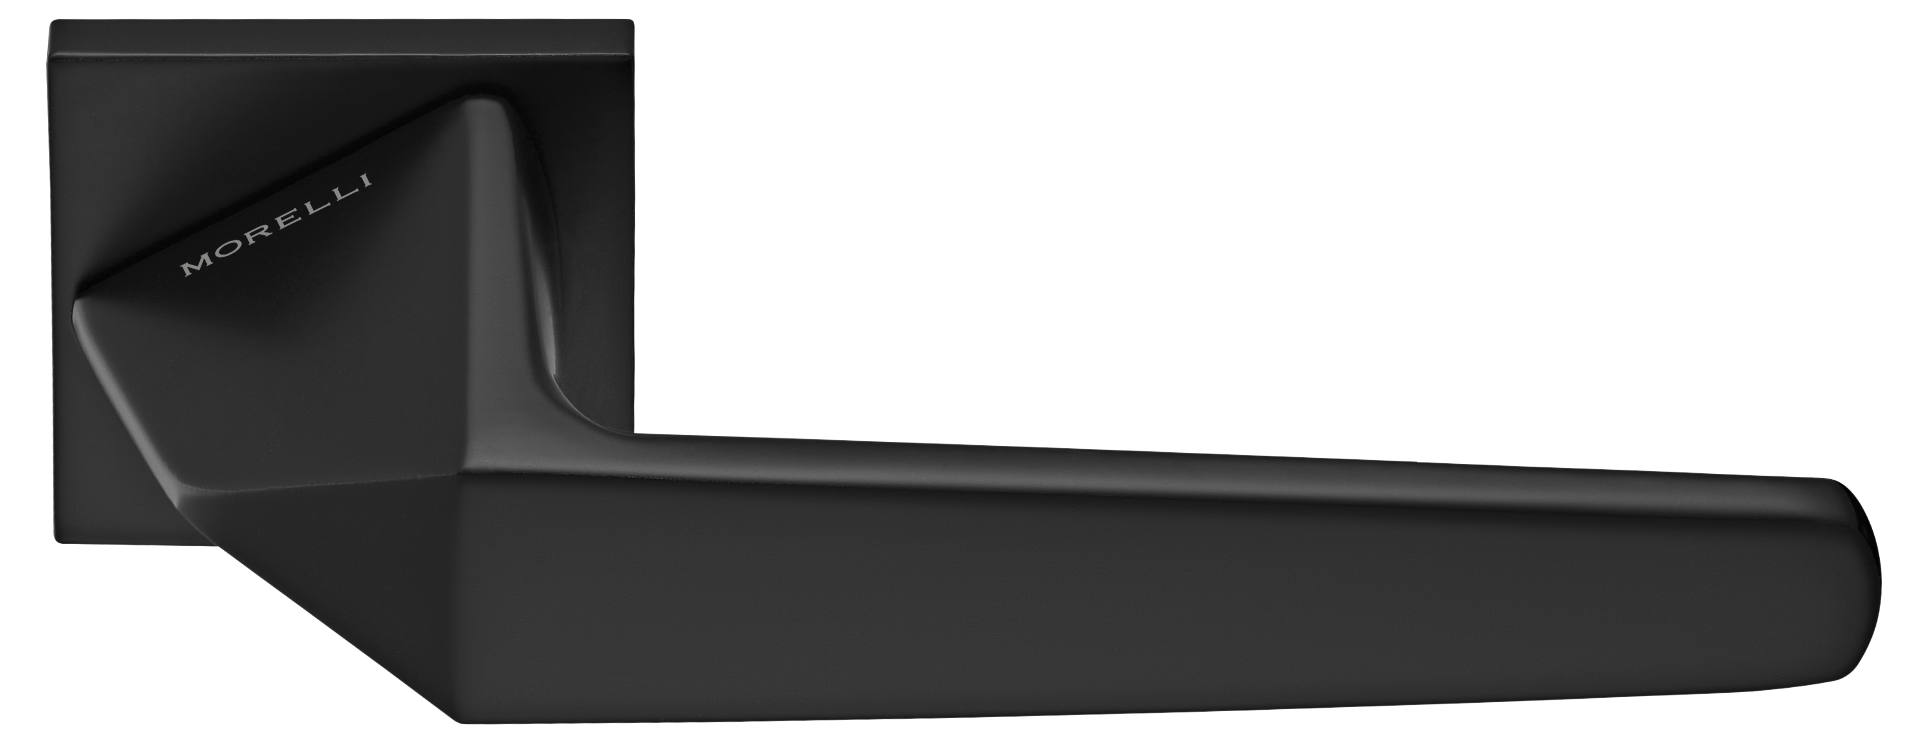 SOUK ручка дверная на квадратной розетке 6 мм, MH-55-S6 BL, цвет - черный фото купить Уральск